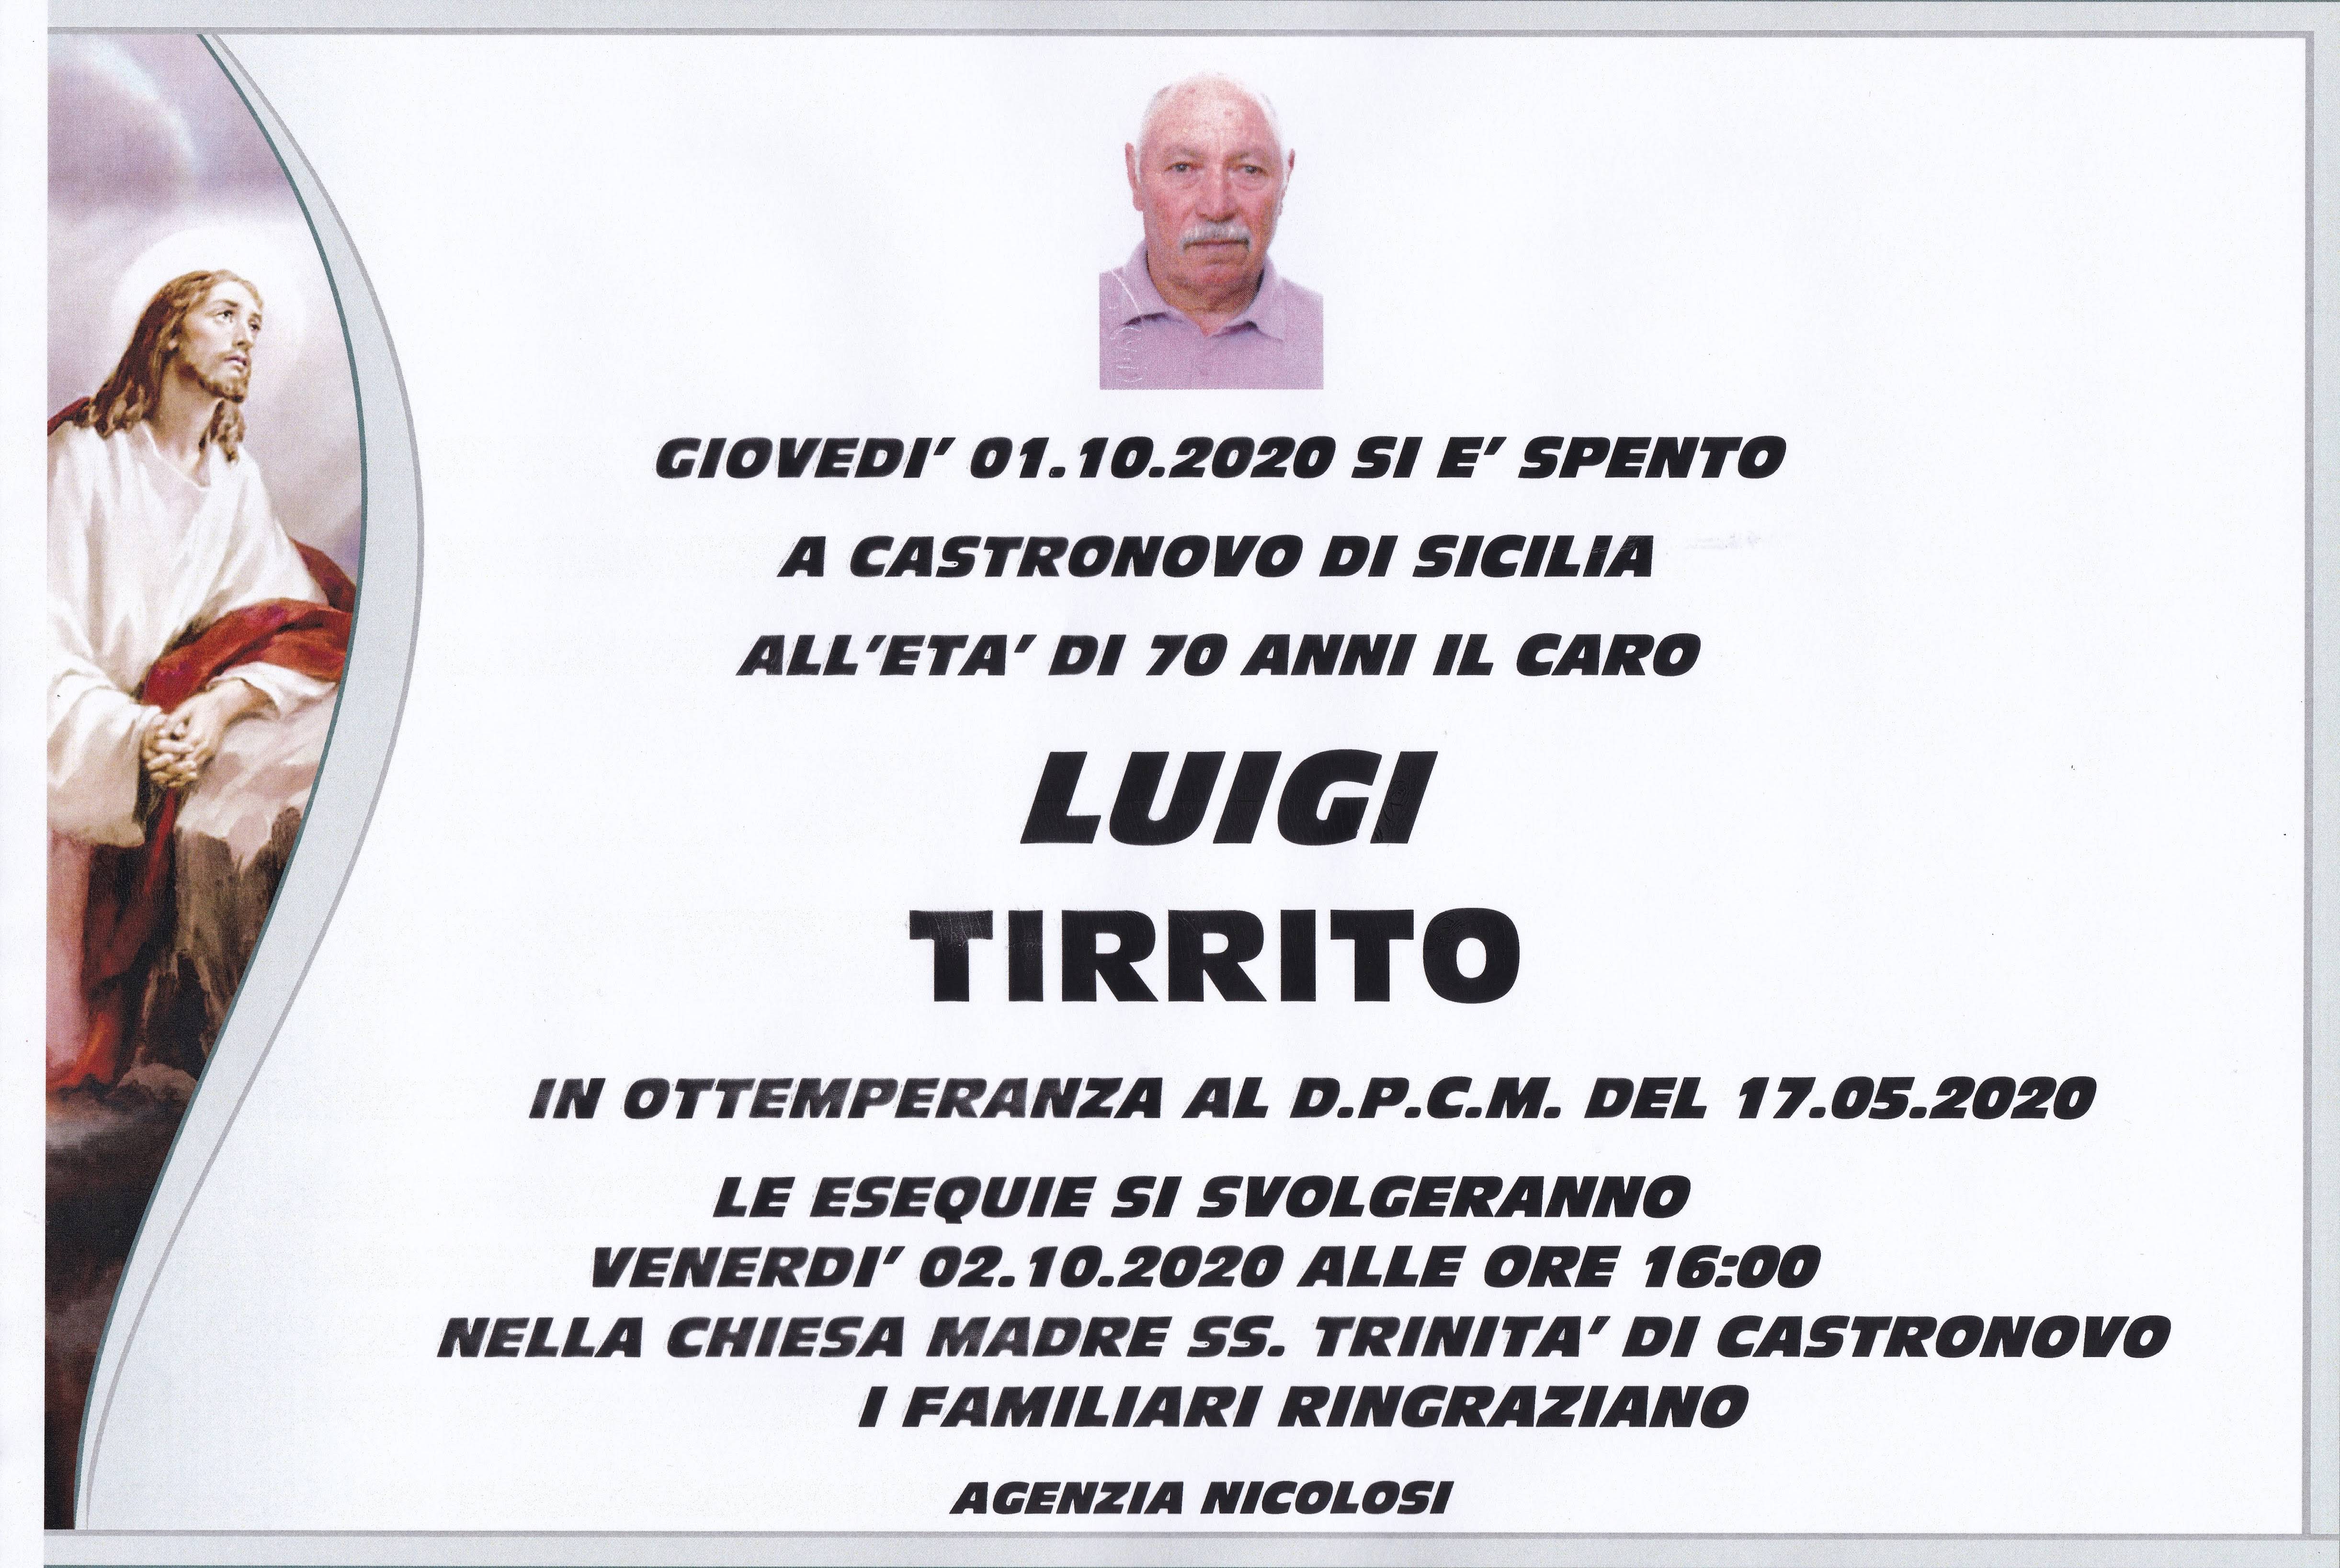 Luigi Tirrito